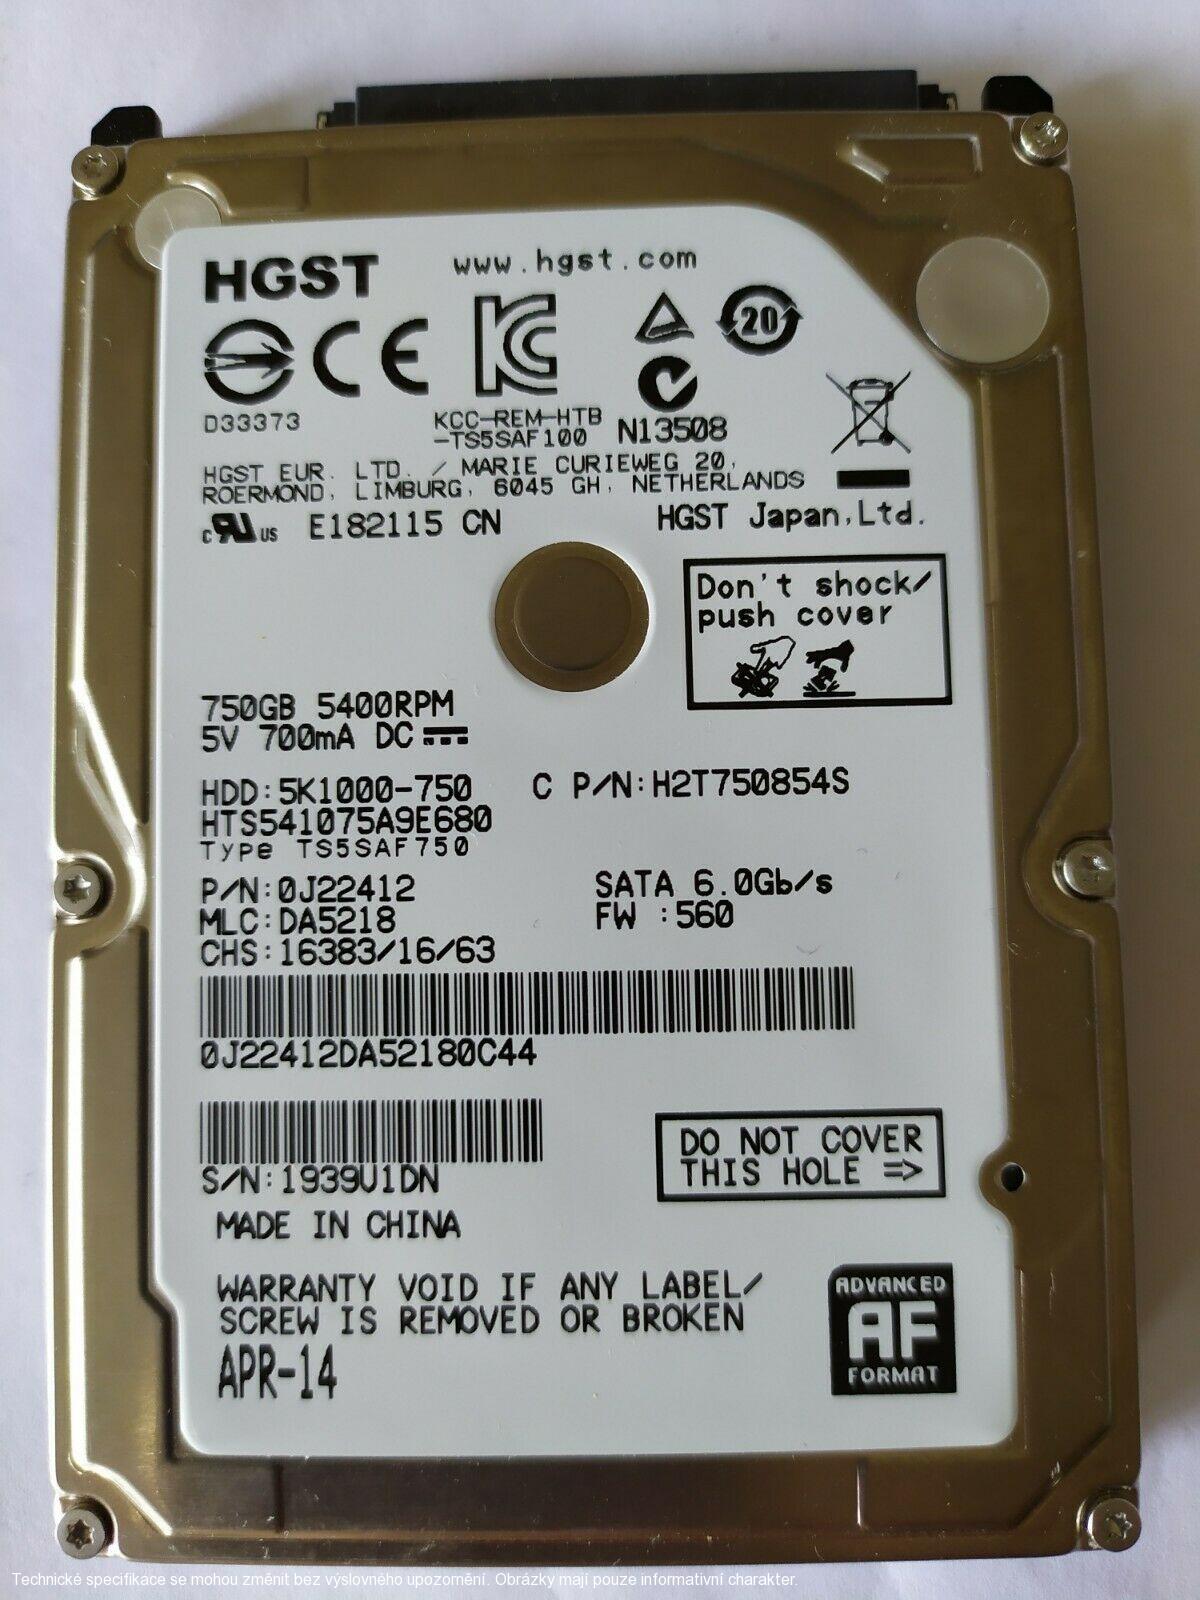 HGST 750GB 2.5" SATA HDD 5400rpm 5K1000-750